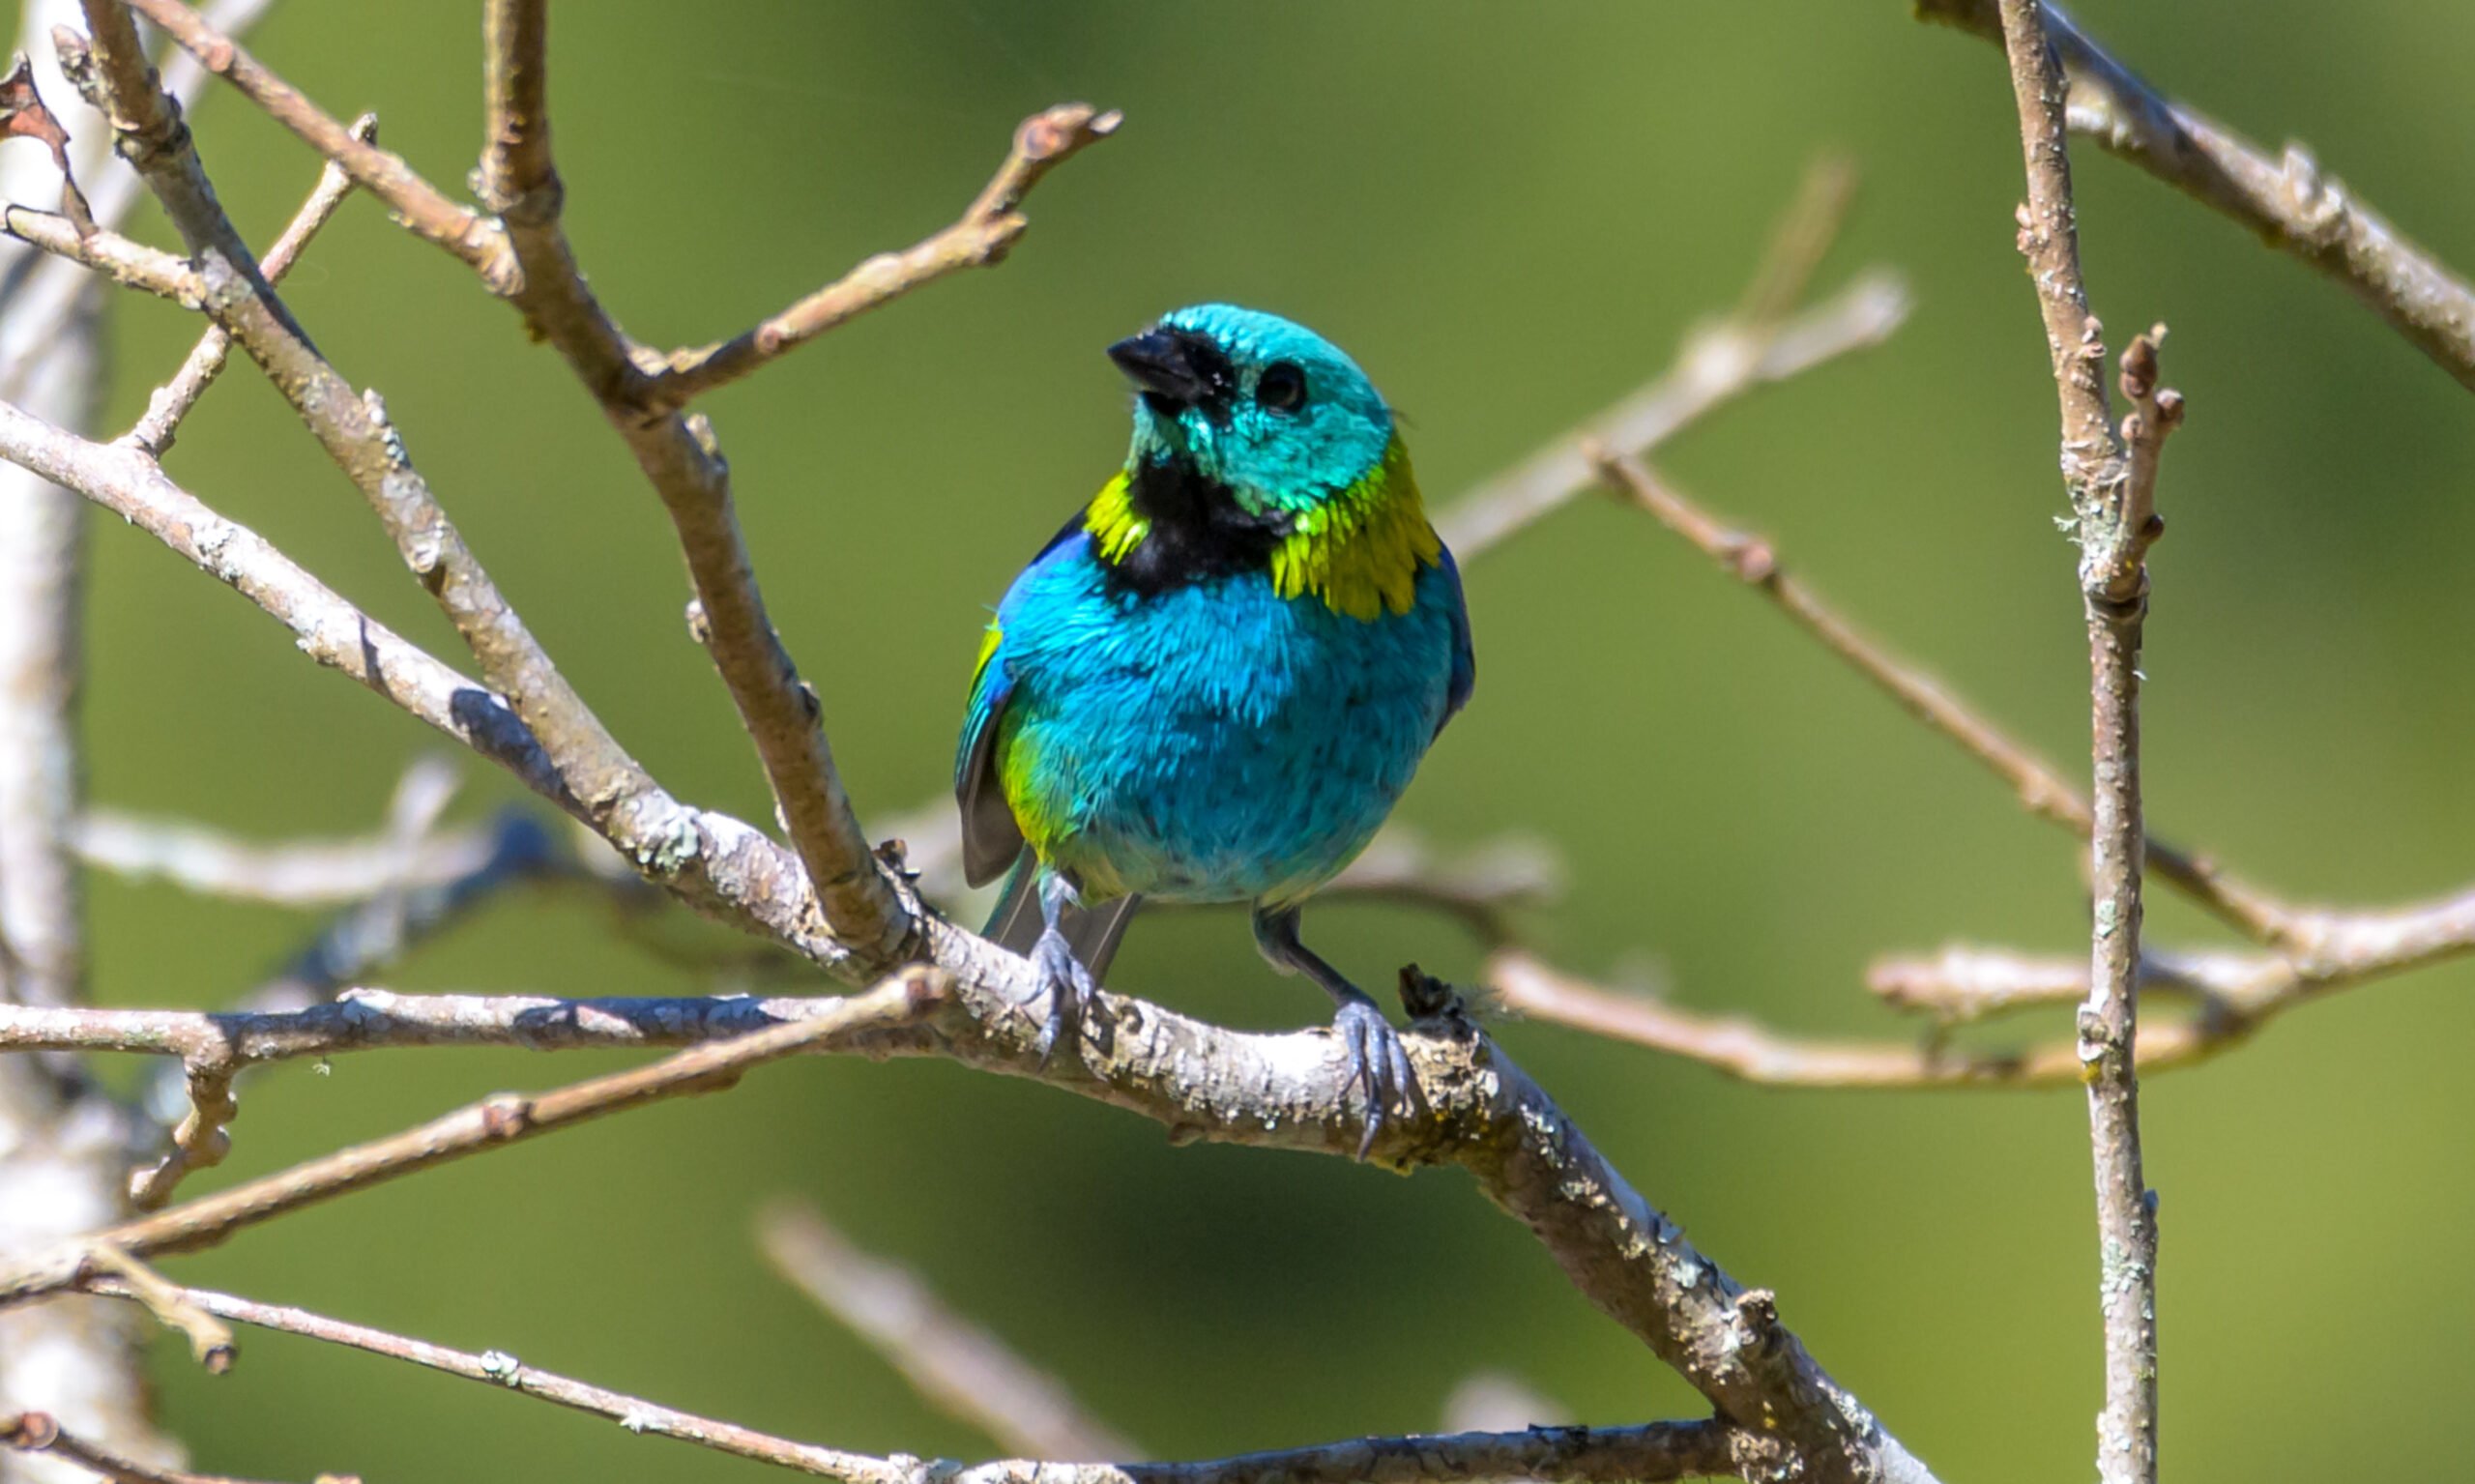 Saíra-sete-cores: ave multicolorida comum no interior do Rio de Janeiro